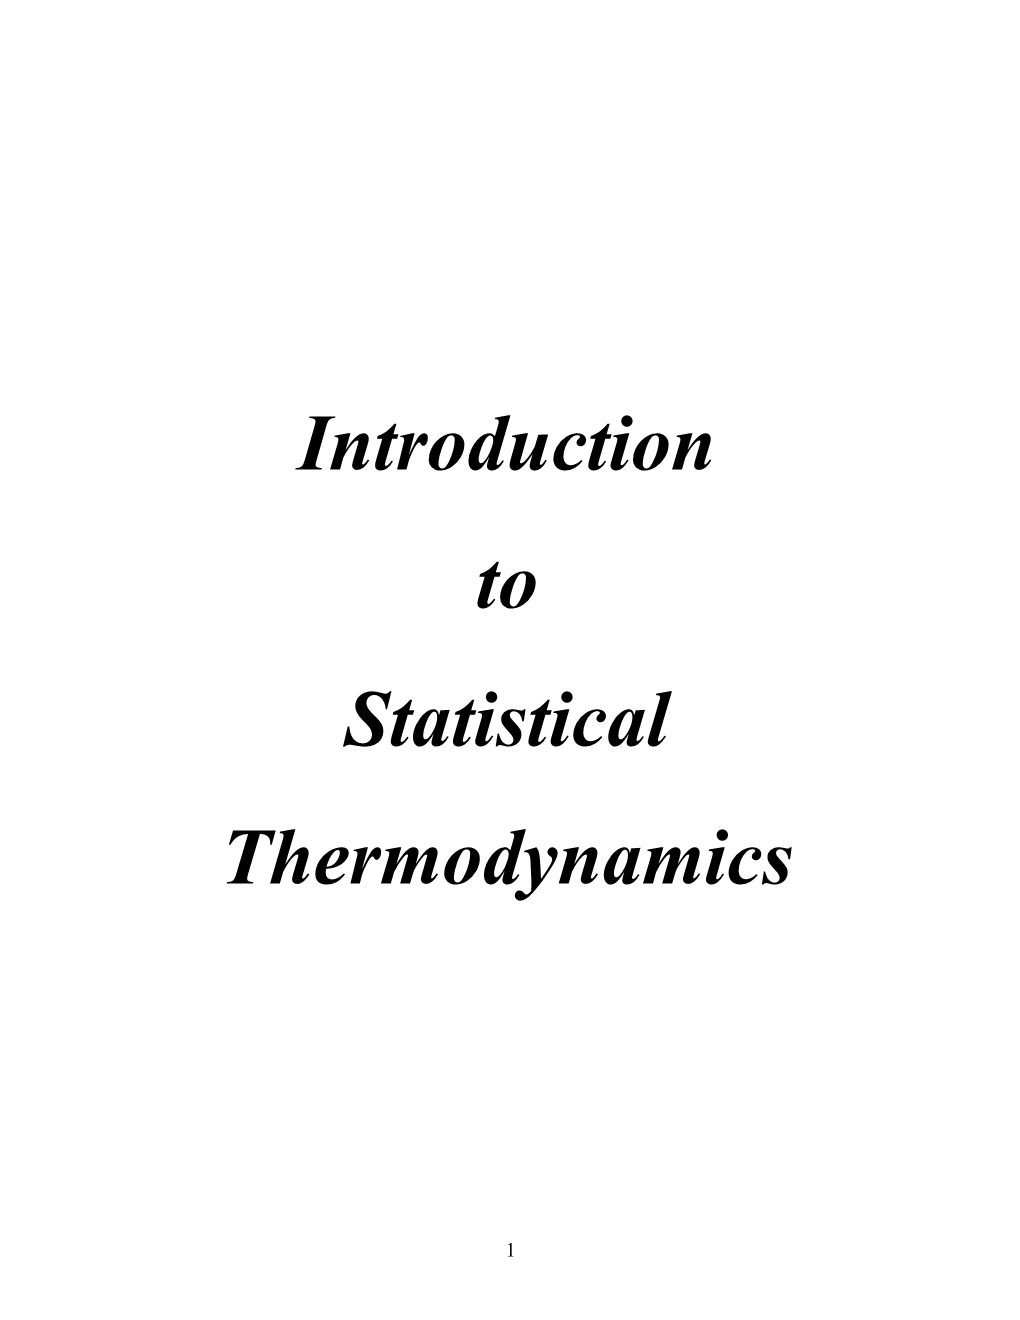 1. the Boltzmann S Distribution